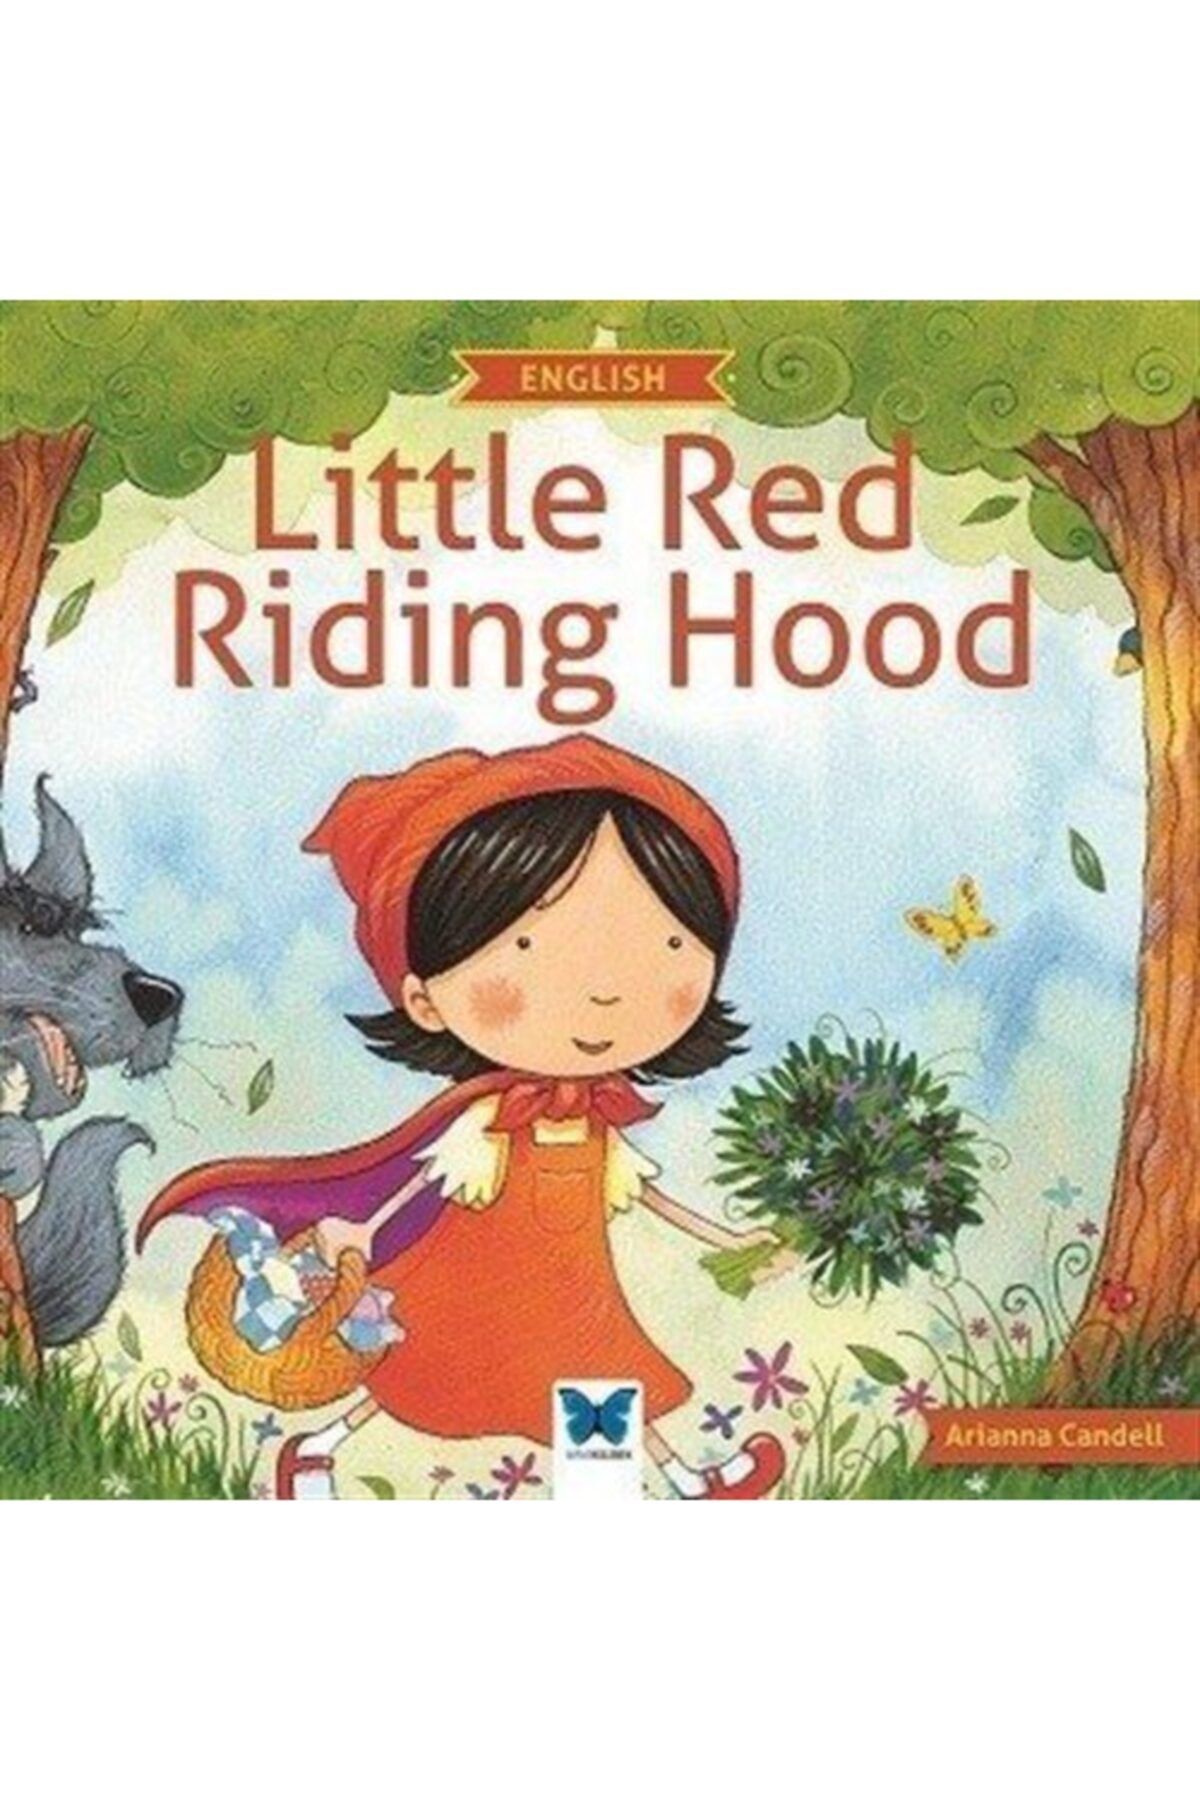 Mavi Kelebek Yayınları Little Red Riding Hood - Arianna Candell 9786059034050